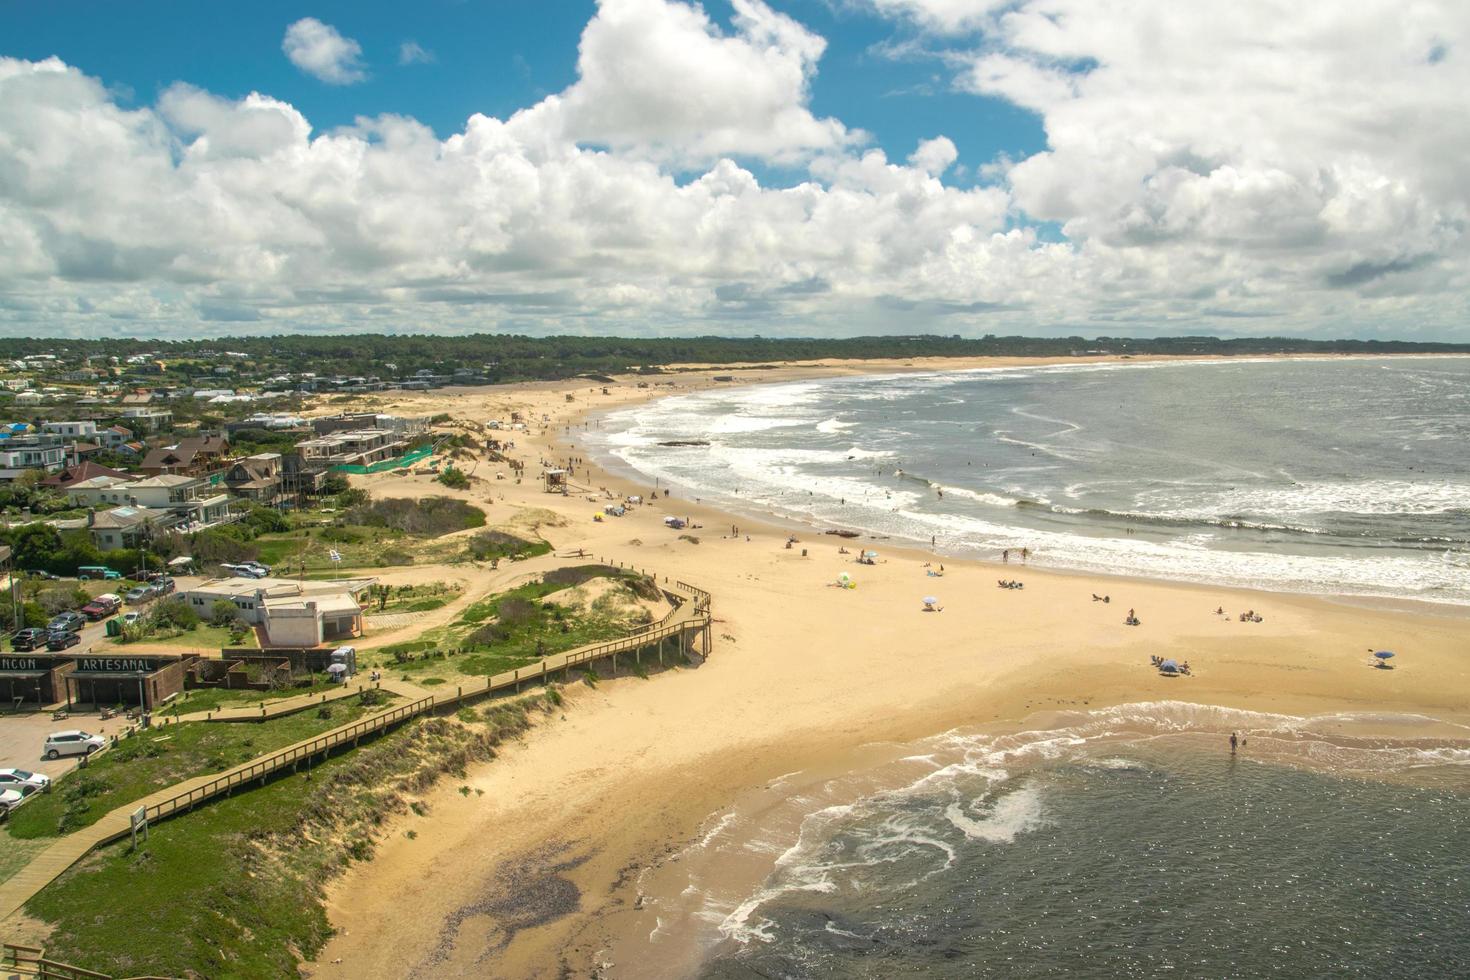 partamento de maldonado, uruguay, 2021 - veduta aerea della spiaggia di jose ignacio foto